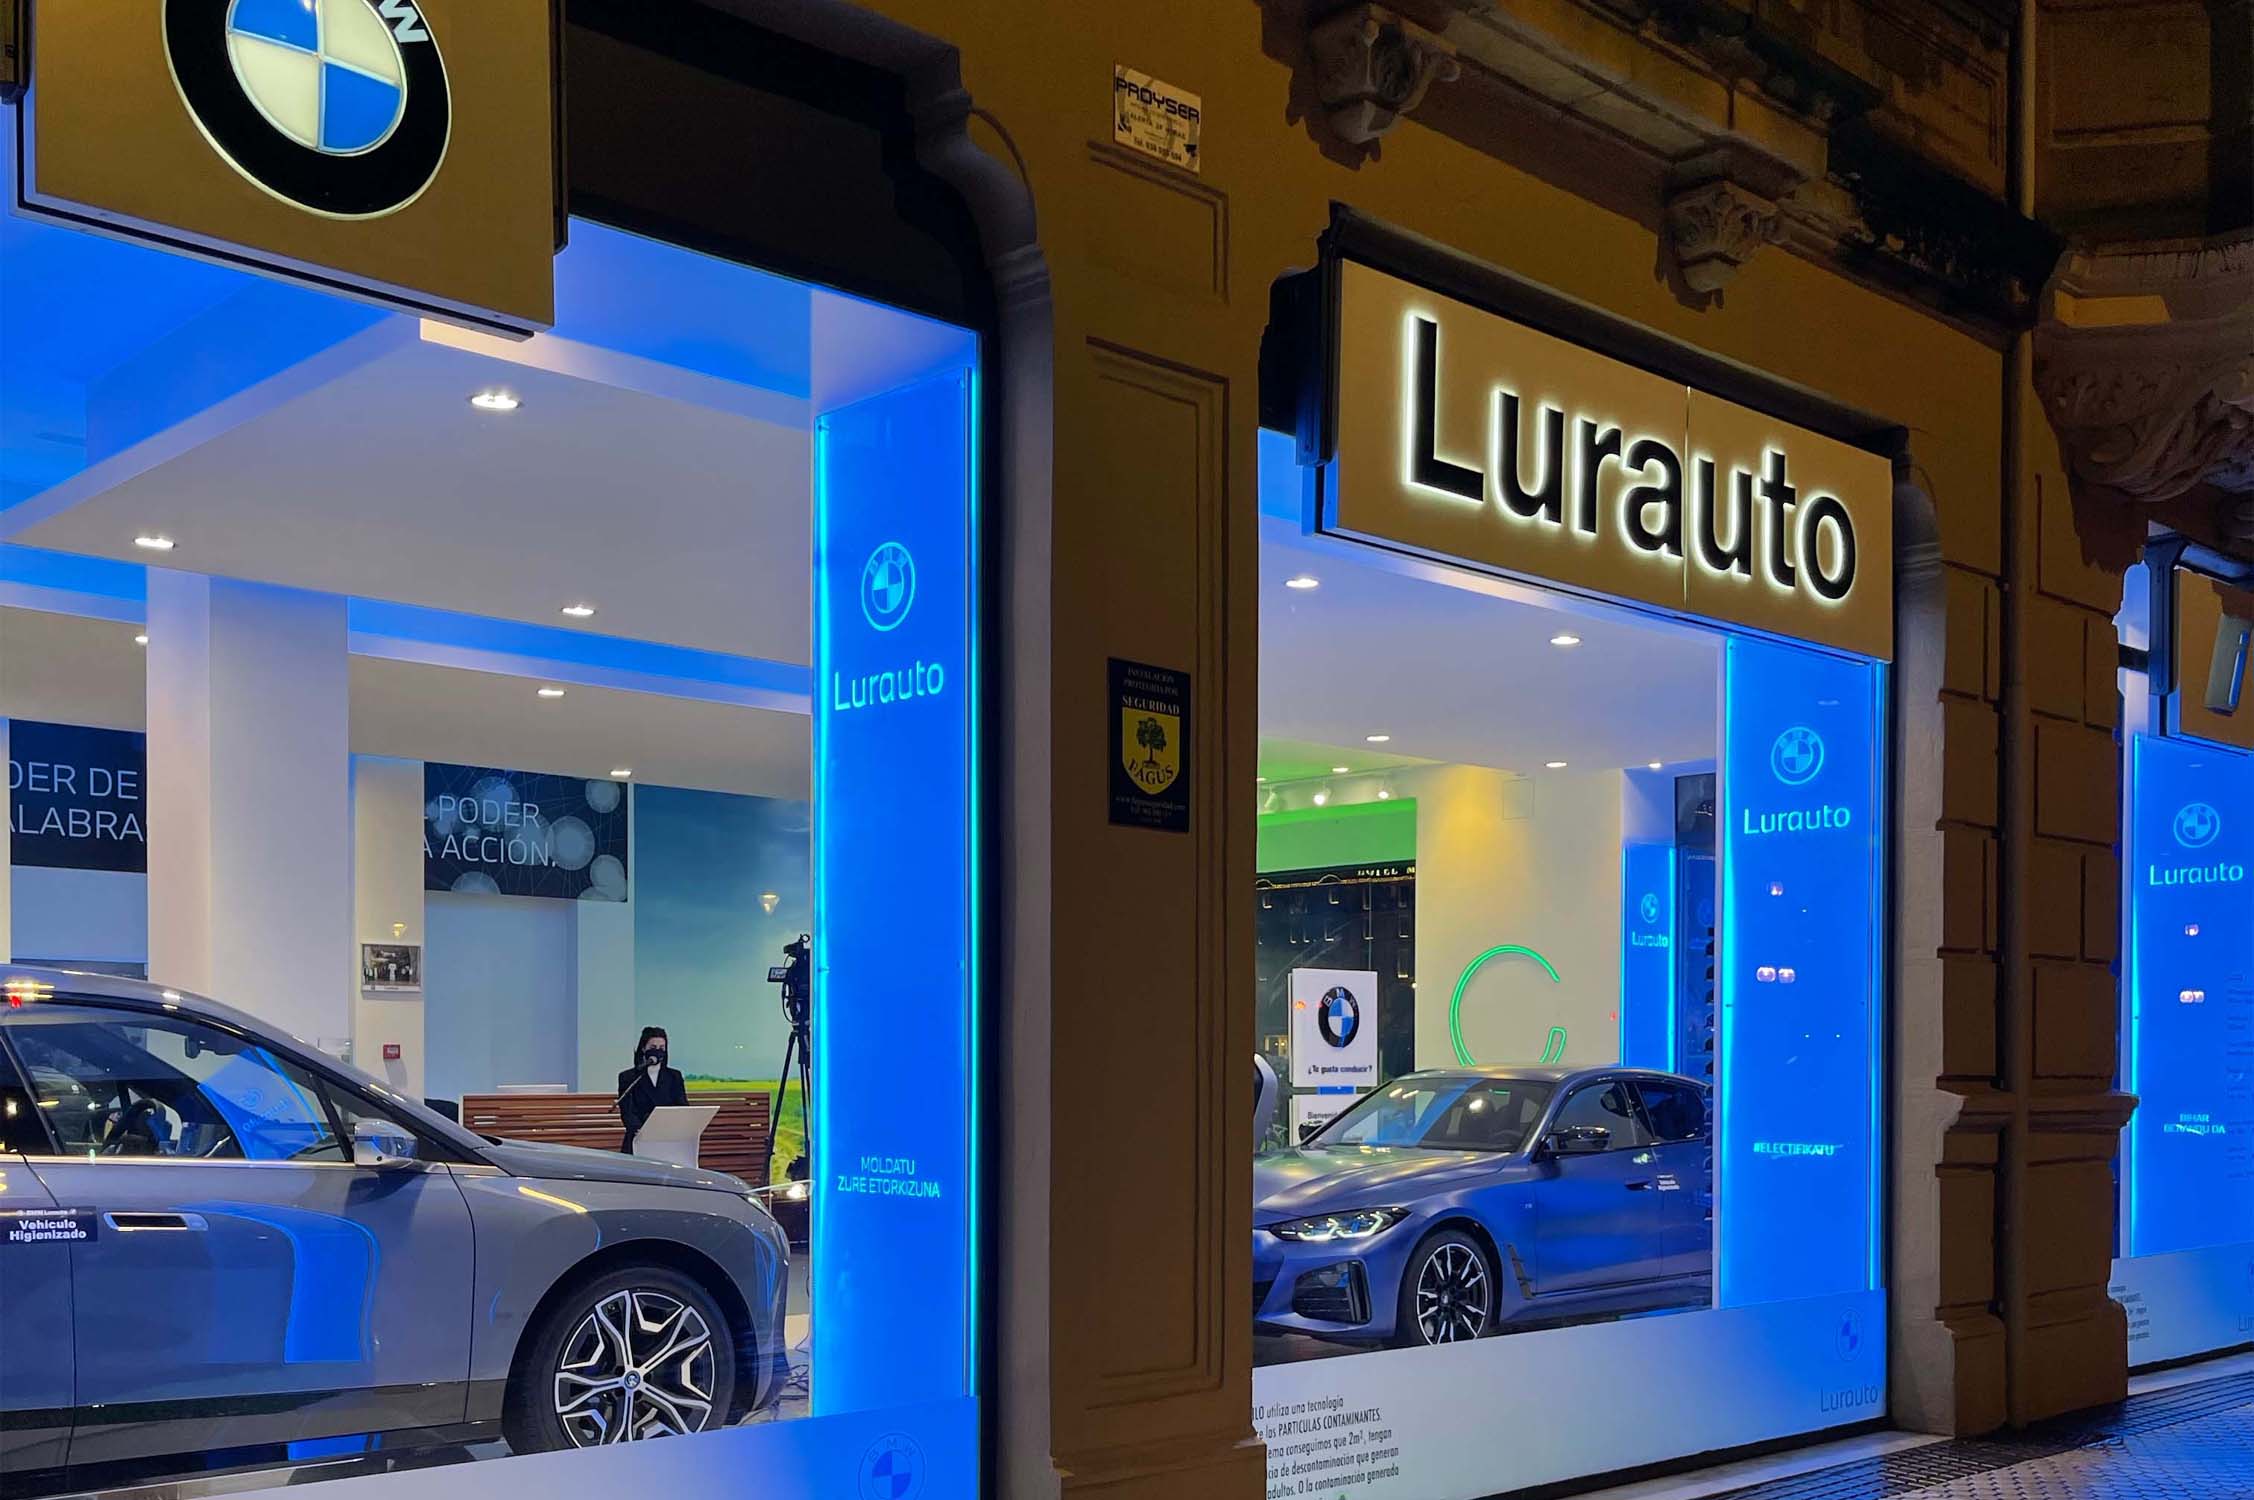 Lurauto&Co inaugura en San Sebastián un nuevo showroom 100% electrificado, primera instalación BMW en España y primer concesionario de Euskadi con una instalación 100% eléctrica